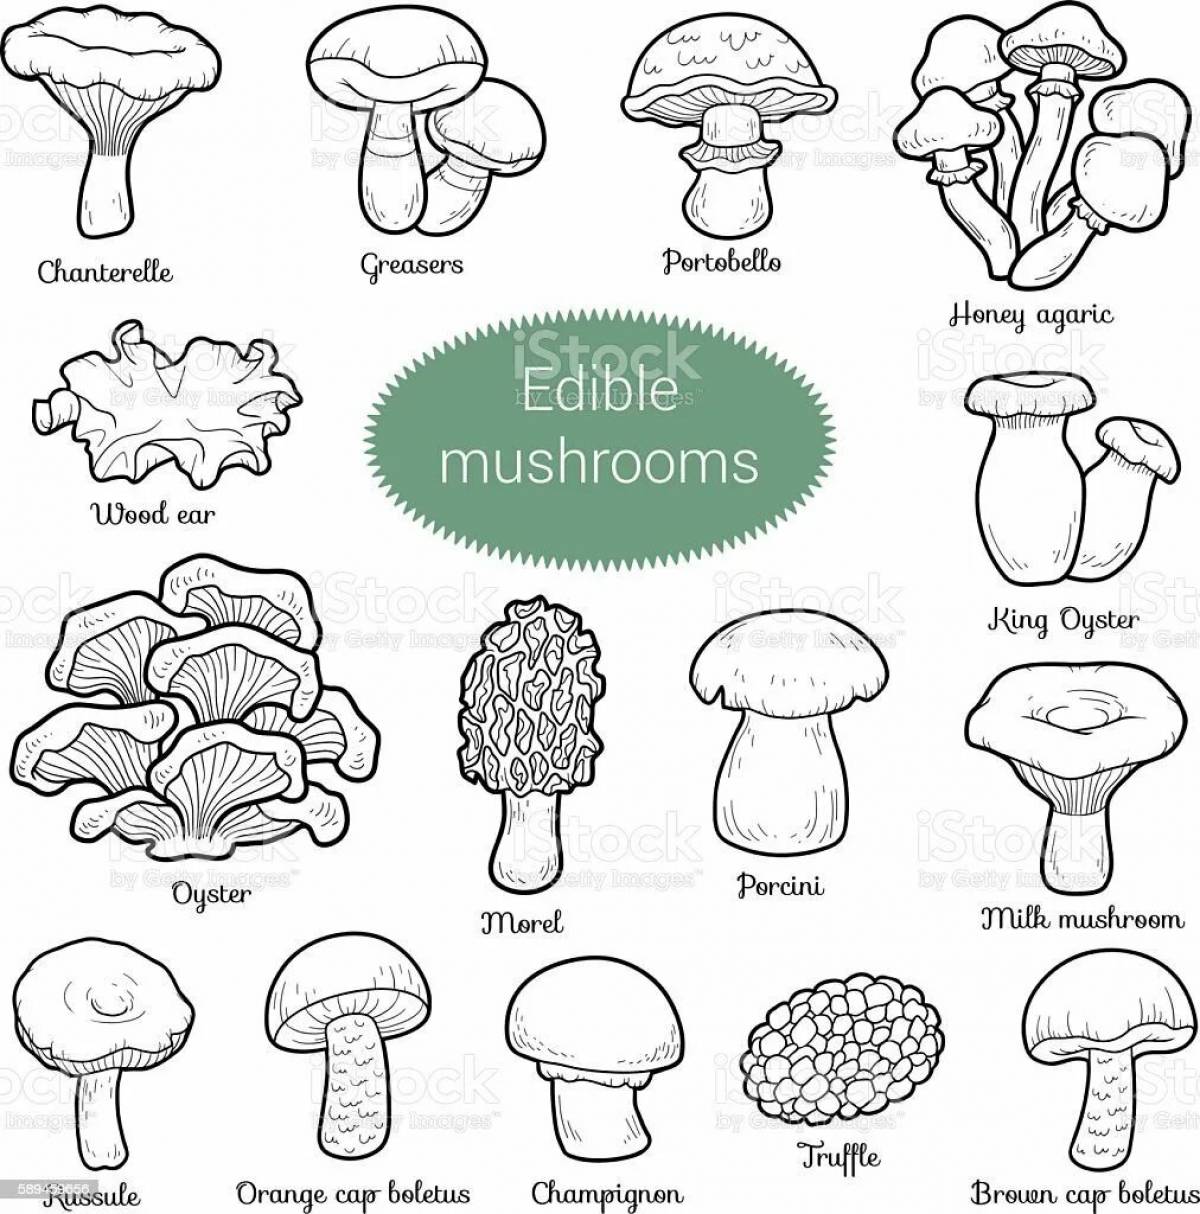 Съедобные и несъедобные грибы раскраска с названиями